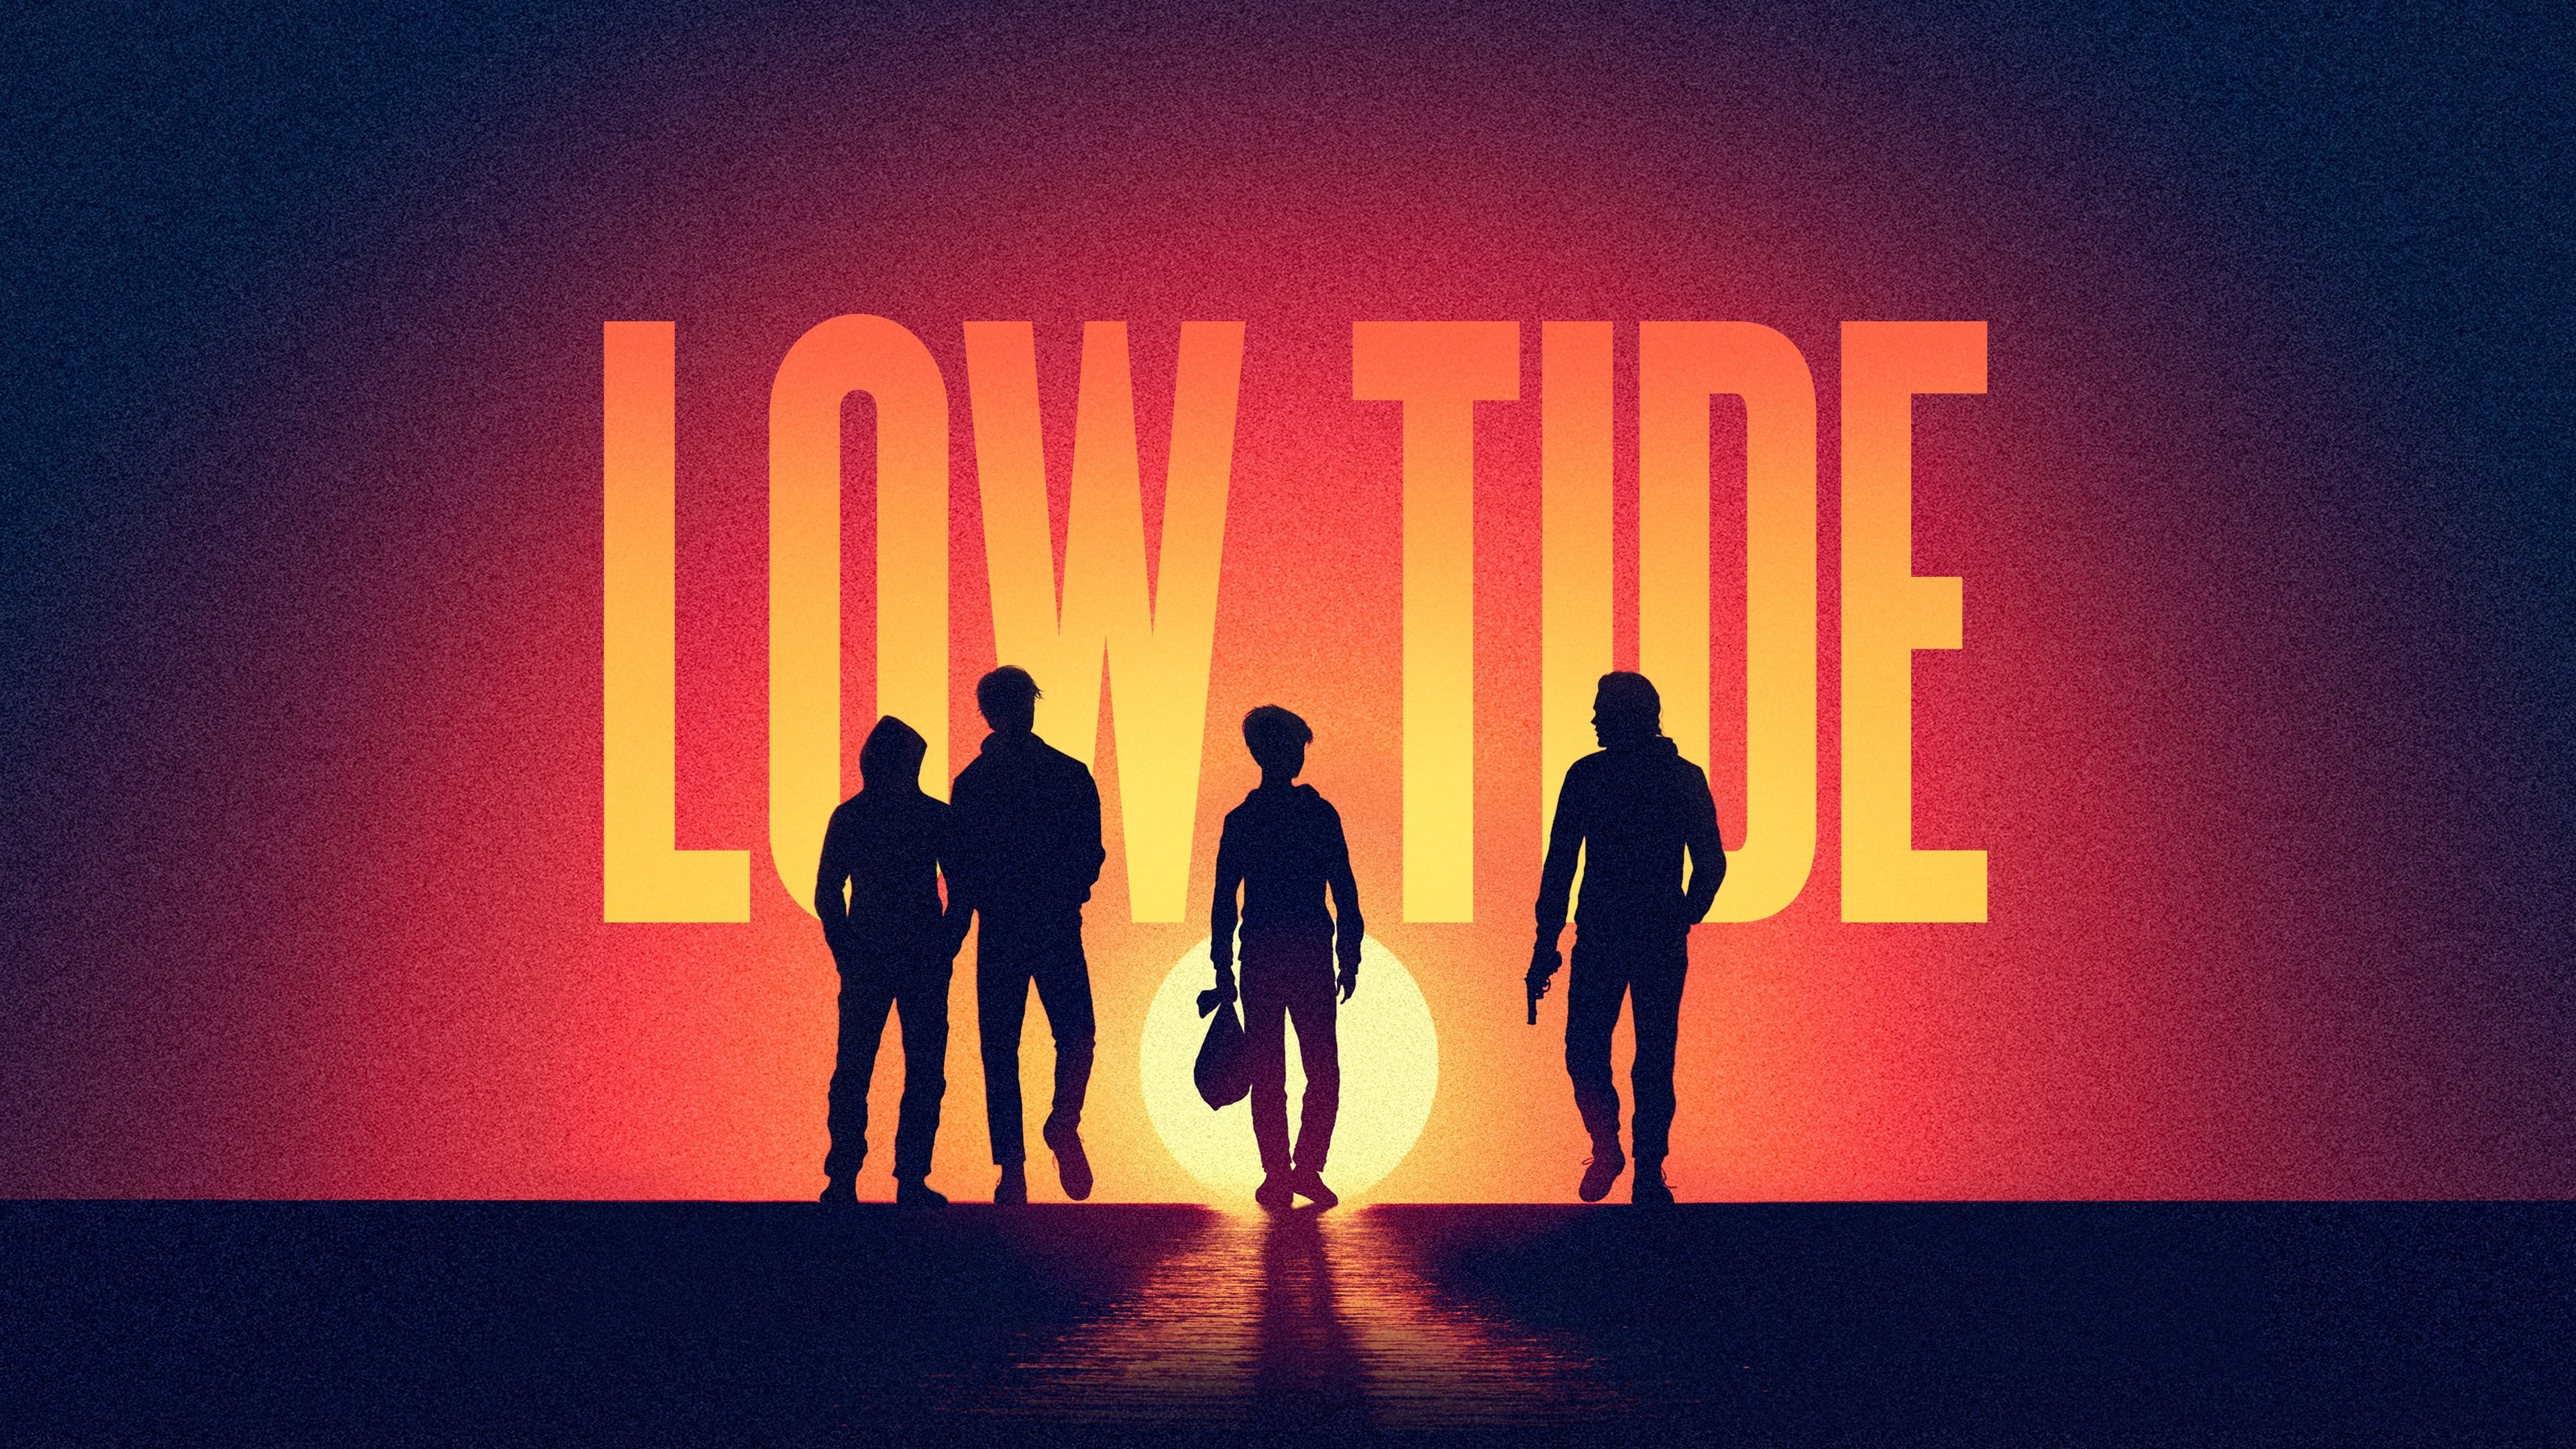 Low Tide (2019)